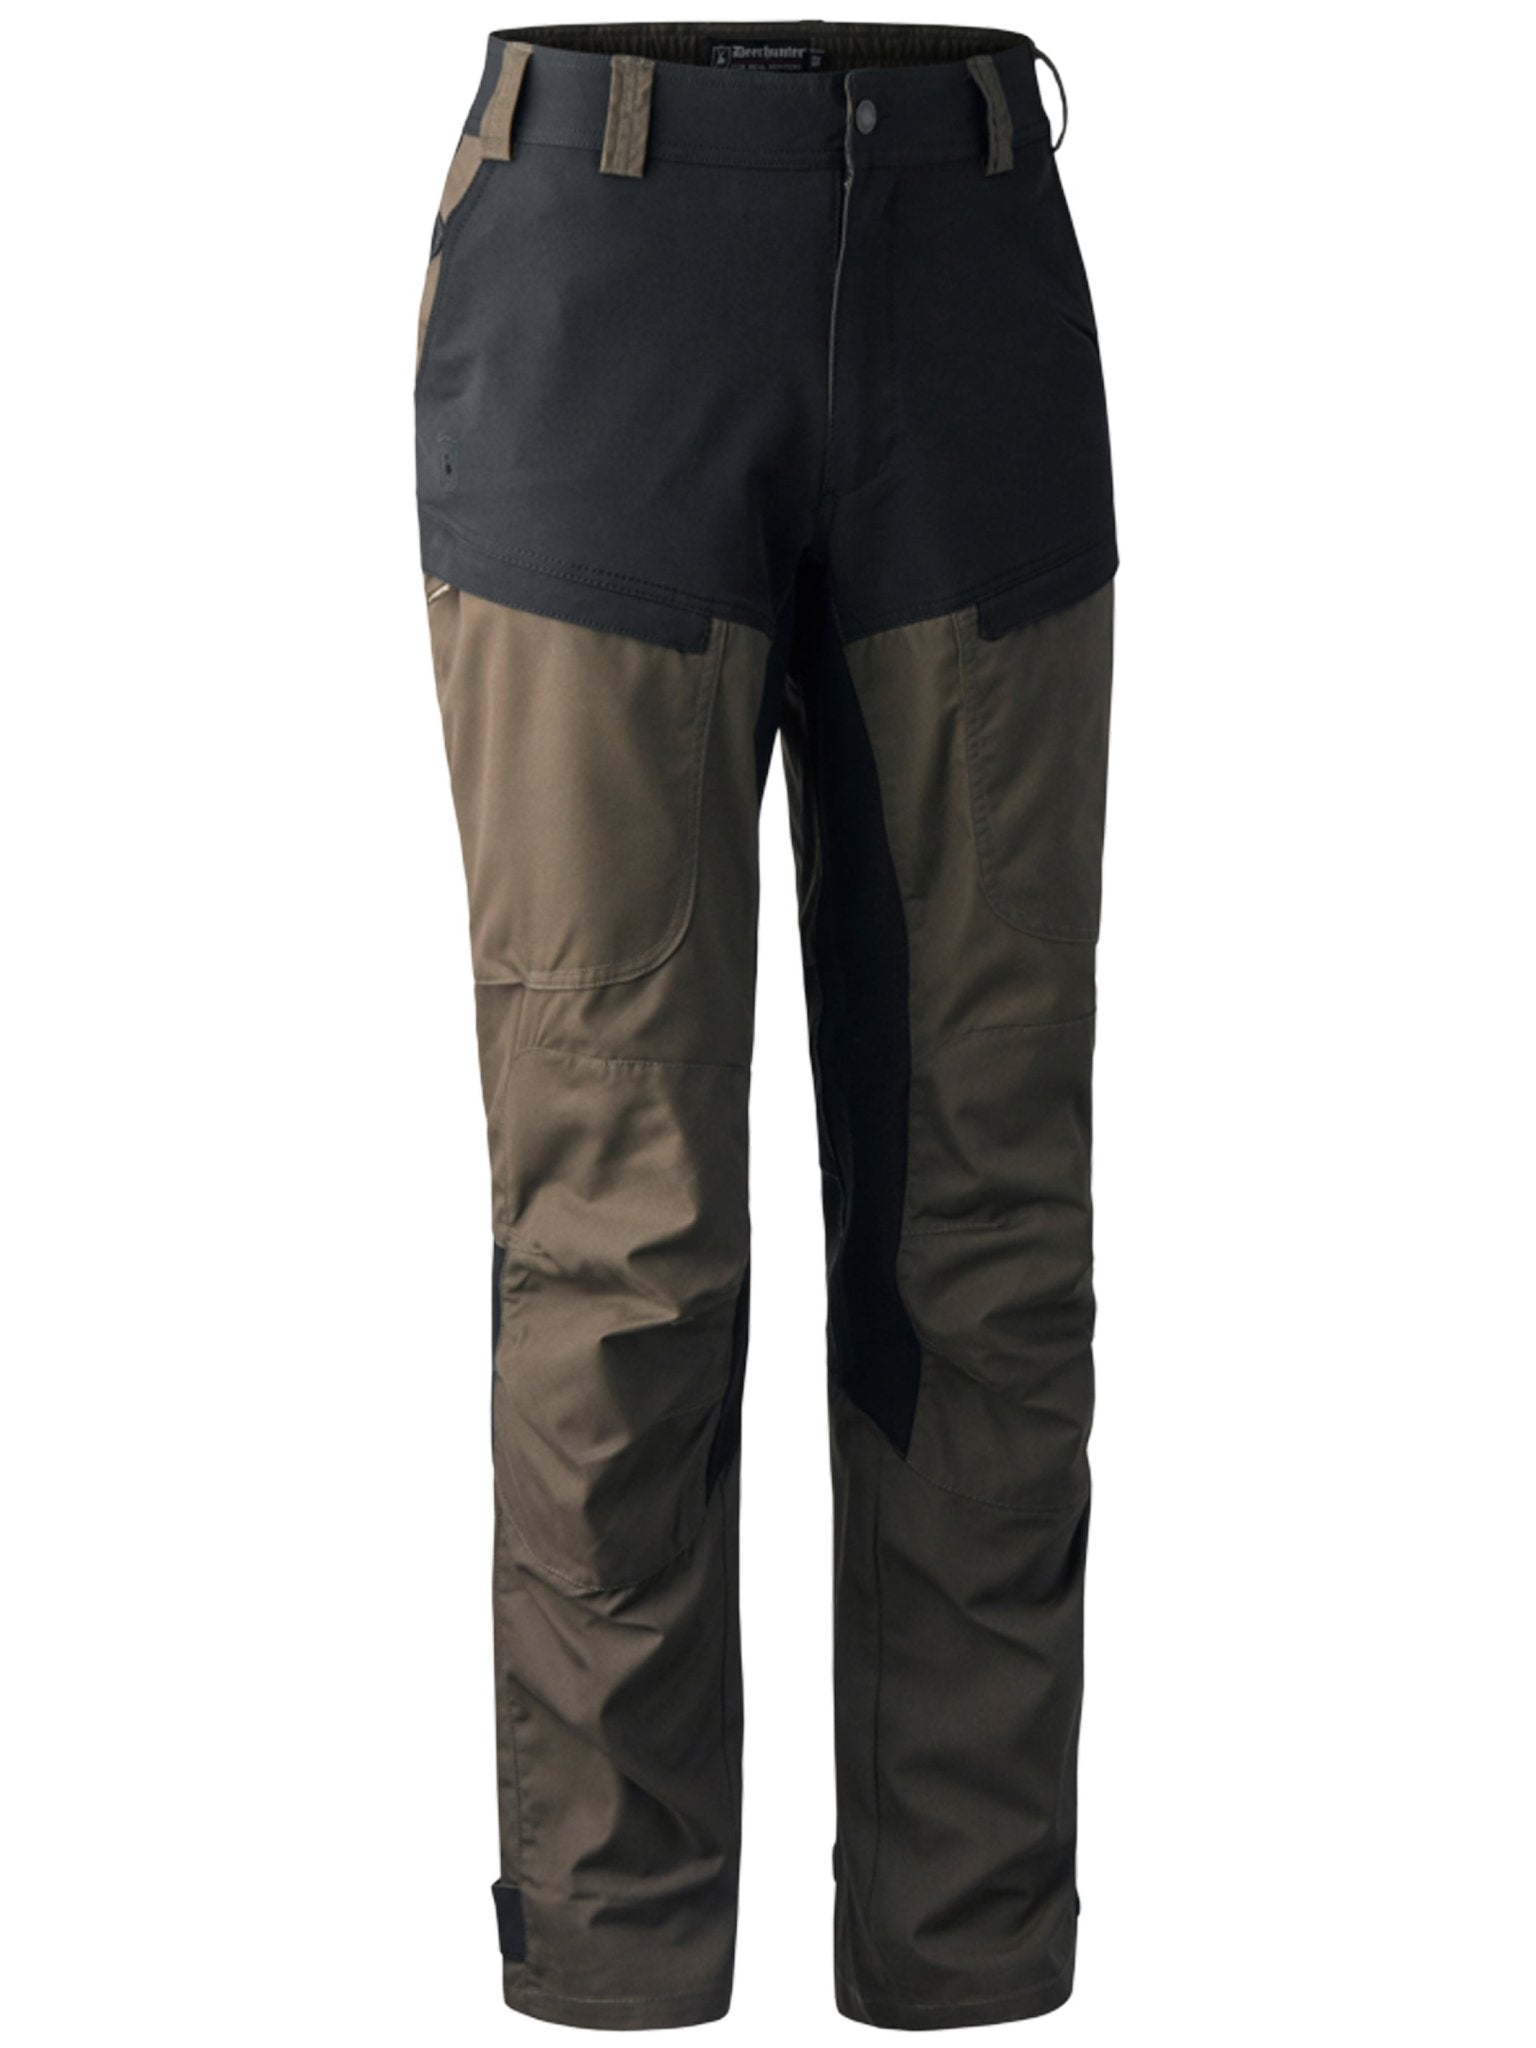 4elementsclothingDeerhunterDeerhunter - Strike Stretch Trousers - Water and dirt resistantTrousers & Jeans3989-381-48